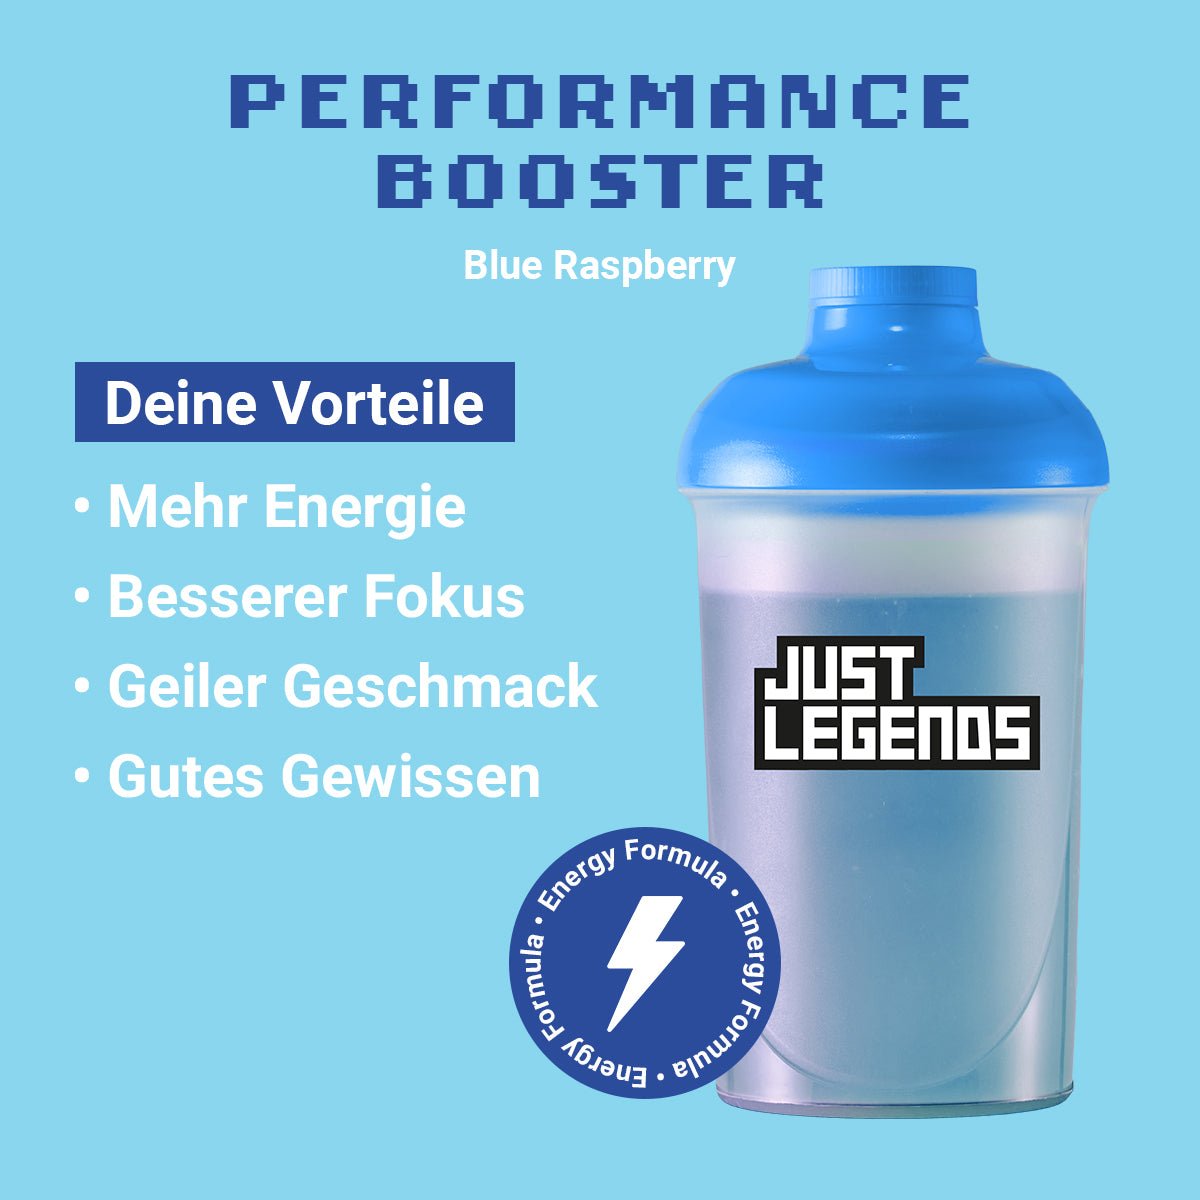 Just Legends Performance Booster Blue Raspberry | Funktionaler, veganer Performance Booster auf Pulverbasis ohne Zucker, mit wenig Kalorien, vielen Vitaminen und natürlichen Aromen.